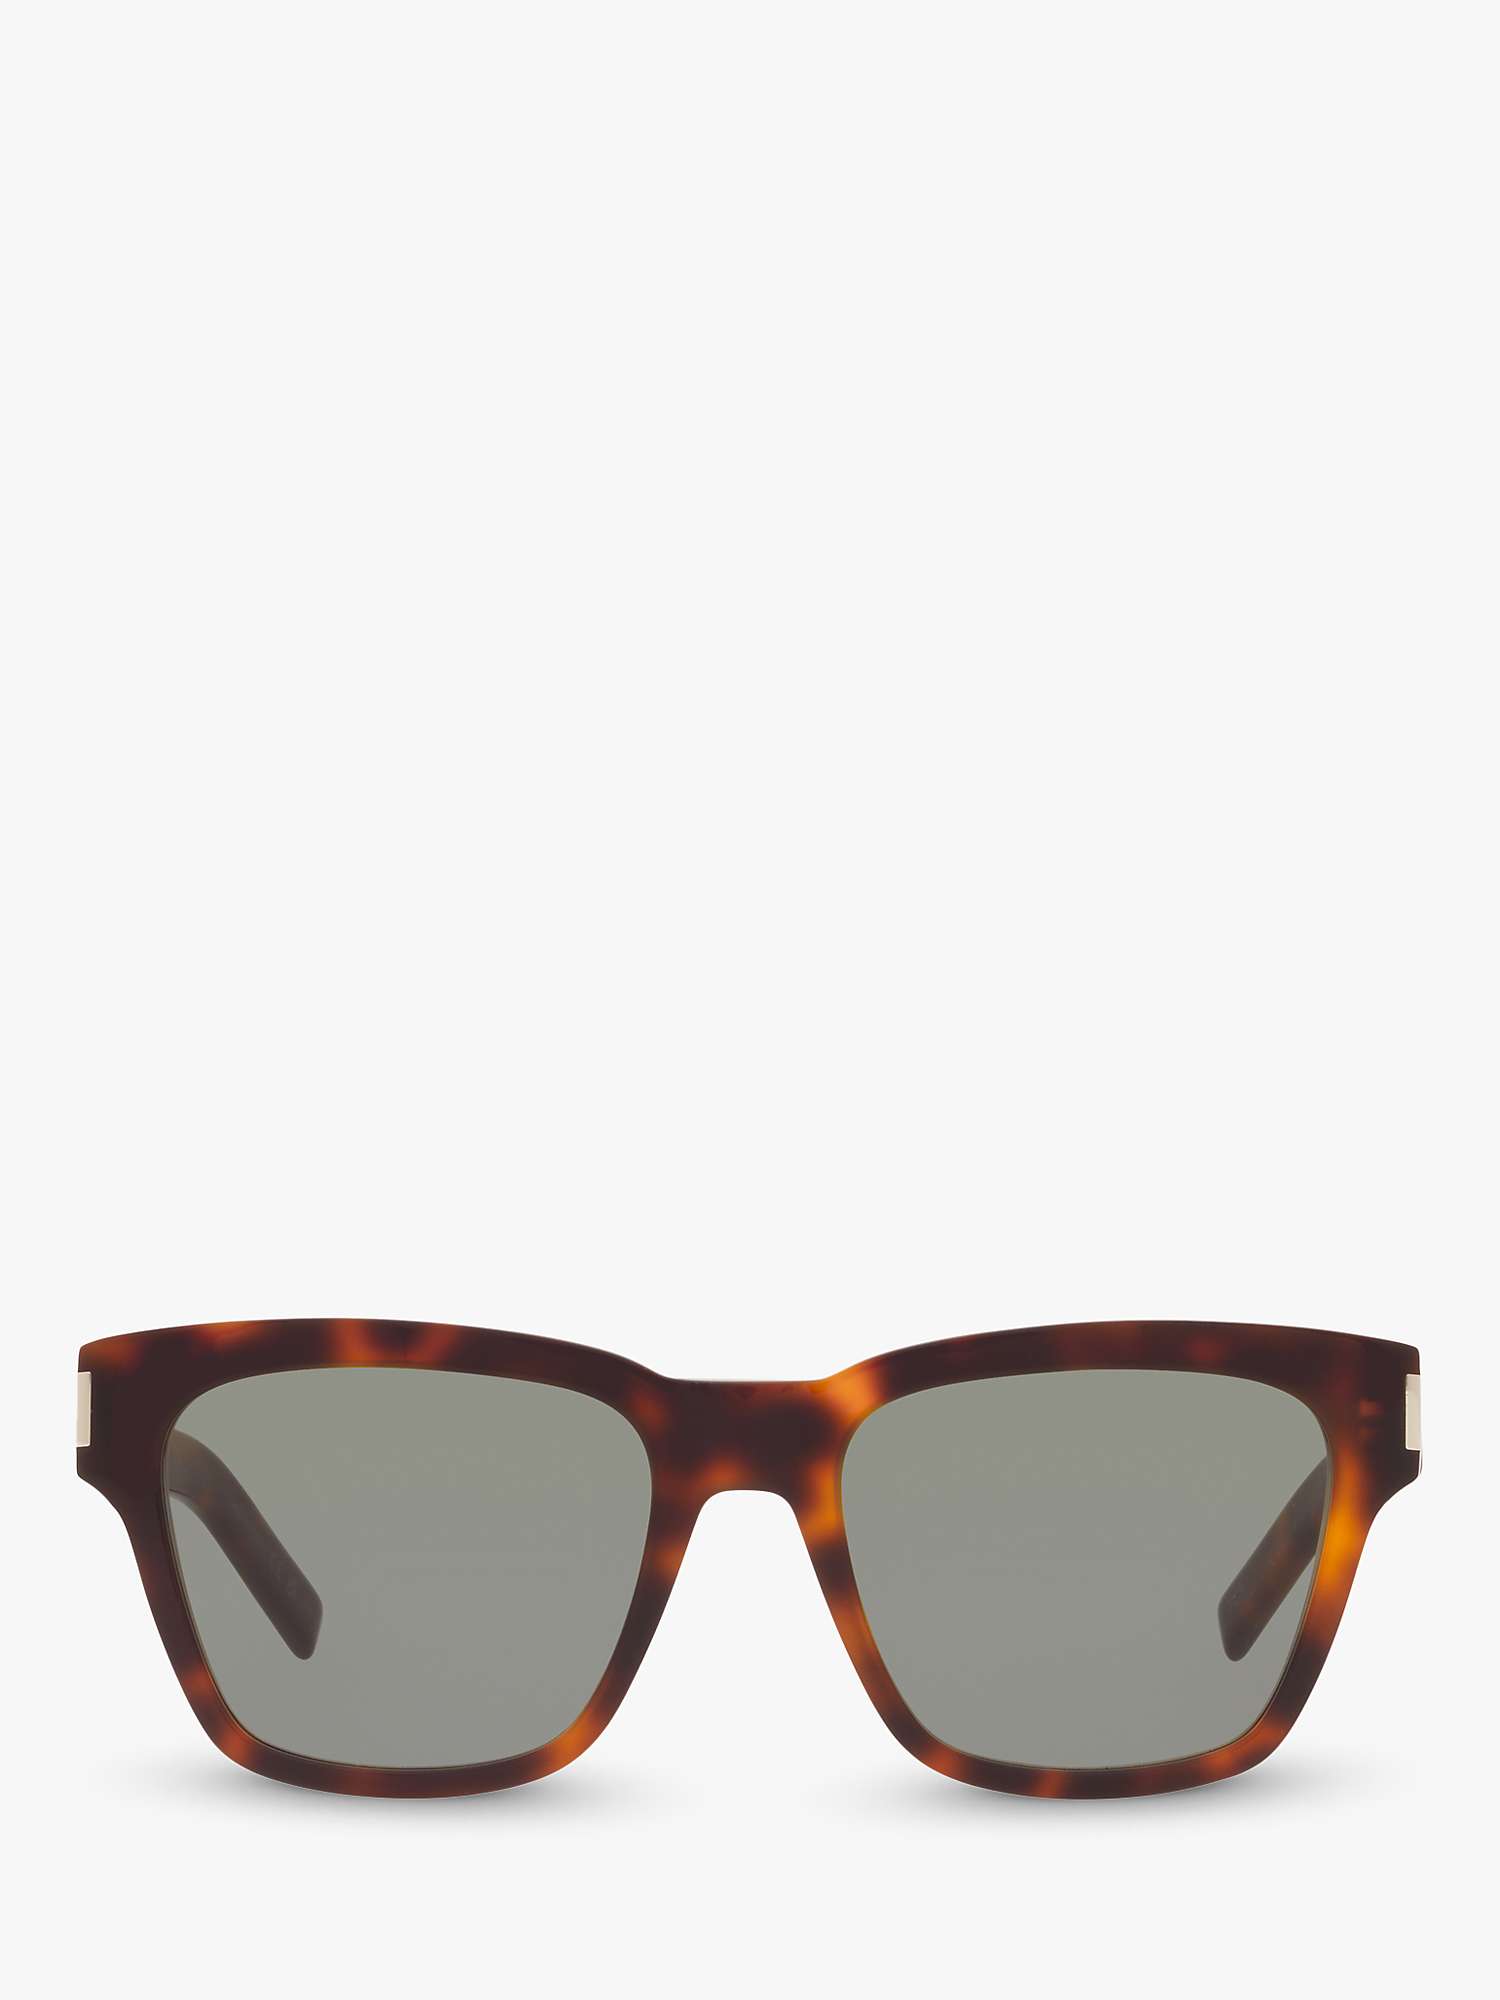 Buy Yves Saint Laurent SL 560 Unisex D-Frame Sunglasses Online at johnlewis.com